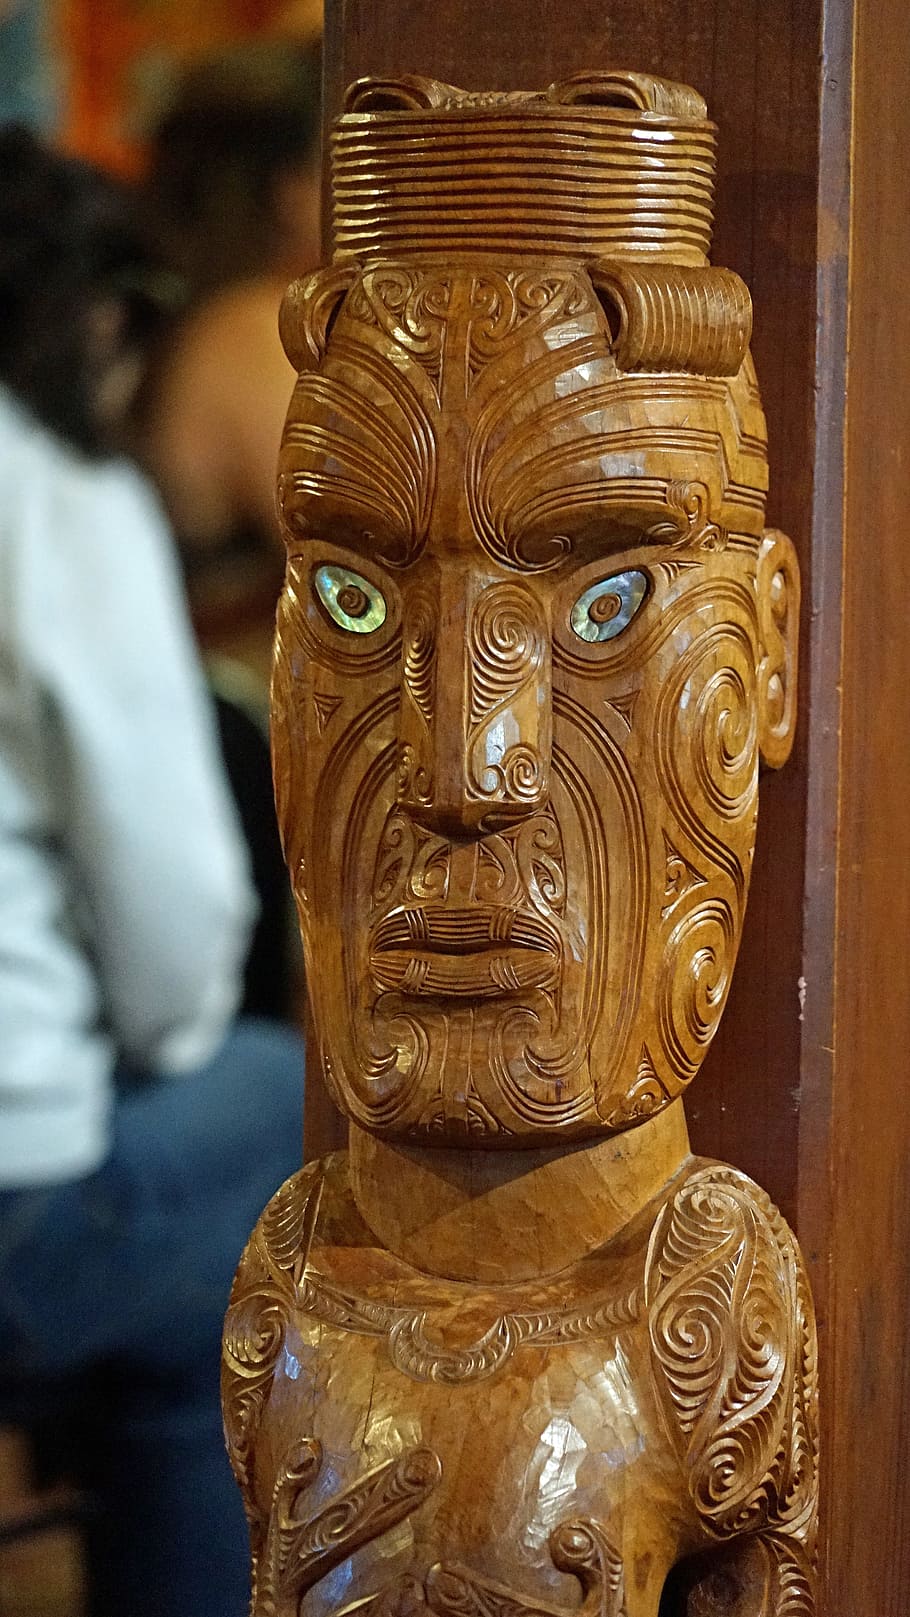 Maori, Figure, Carving, maori figure, arts crafts, holzfigur, new zealand, craft, face, ornament